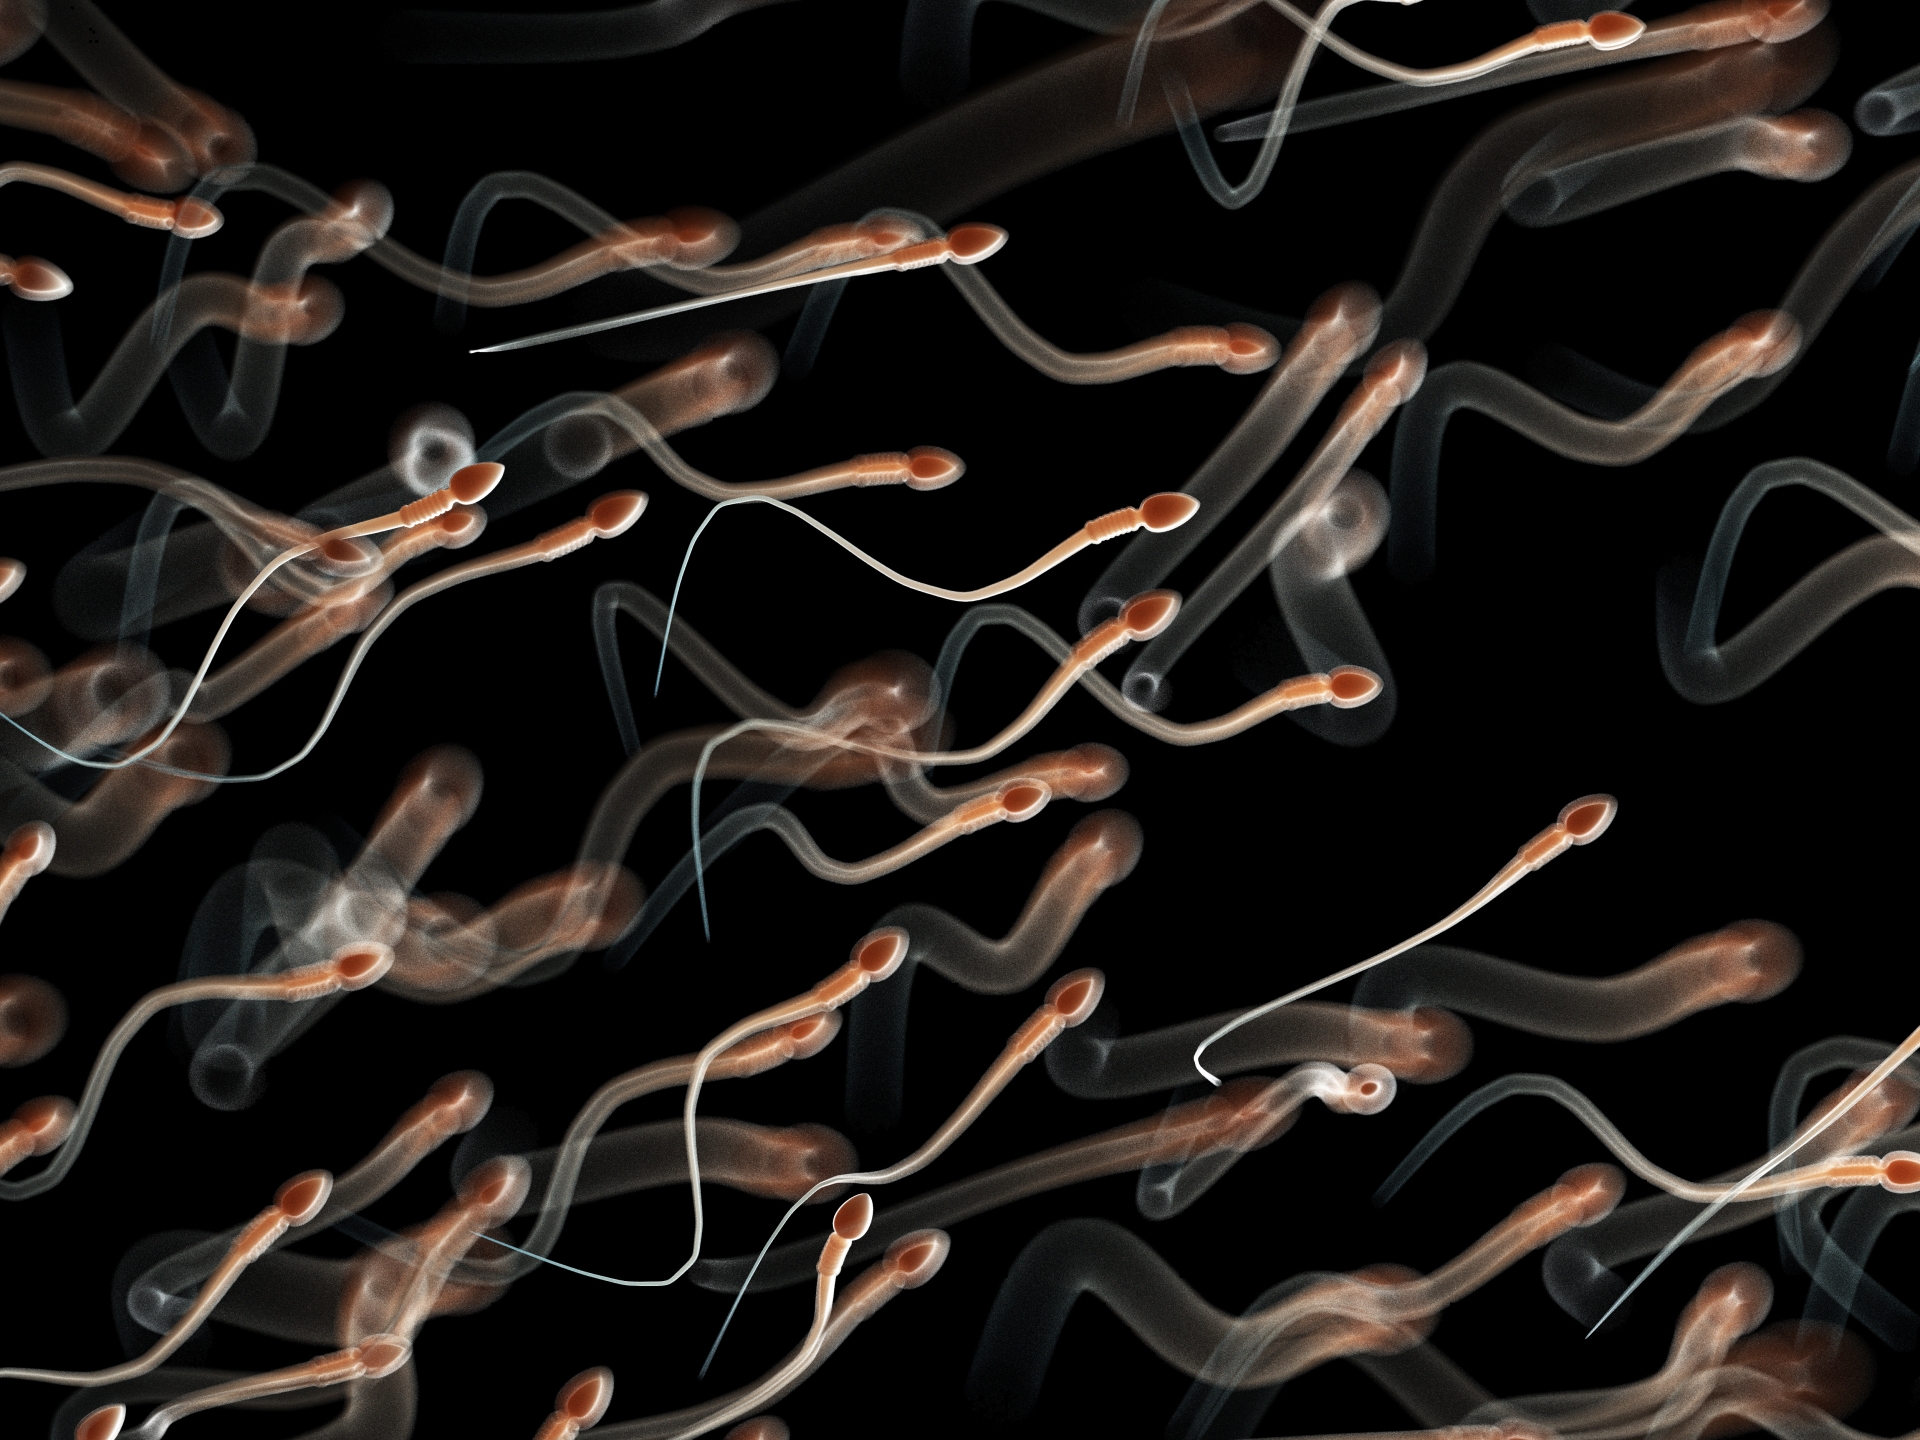 "Un homme fertile produit seulement 6-8% de spermatozoïdes morphologiquement normaux", selon le Dr Laurent Vaucher.